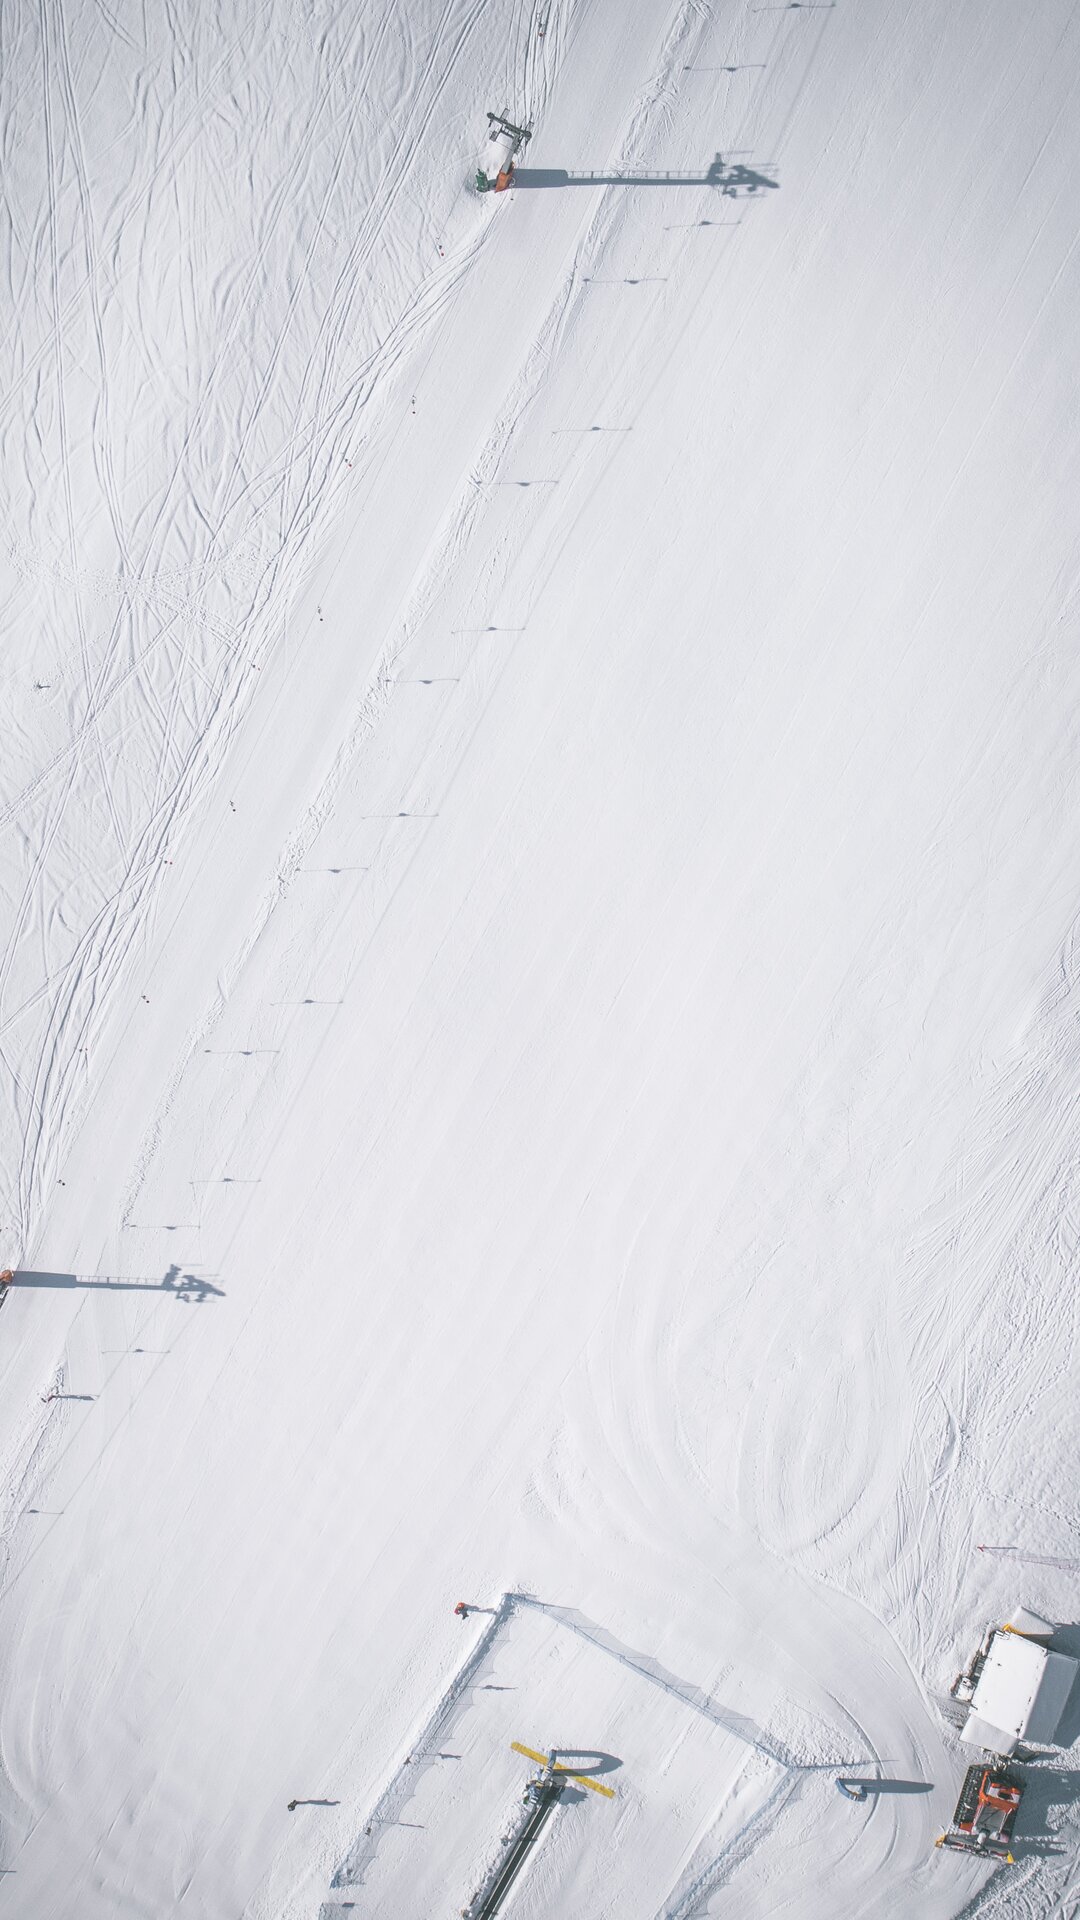 Ski Slope | © Manuel Kottersteger